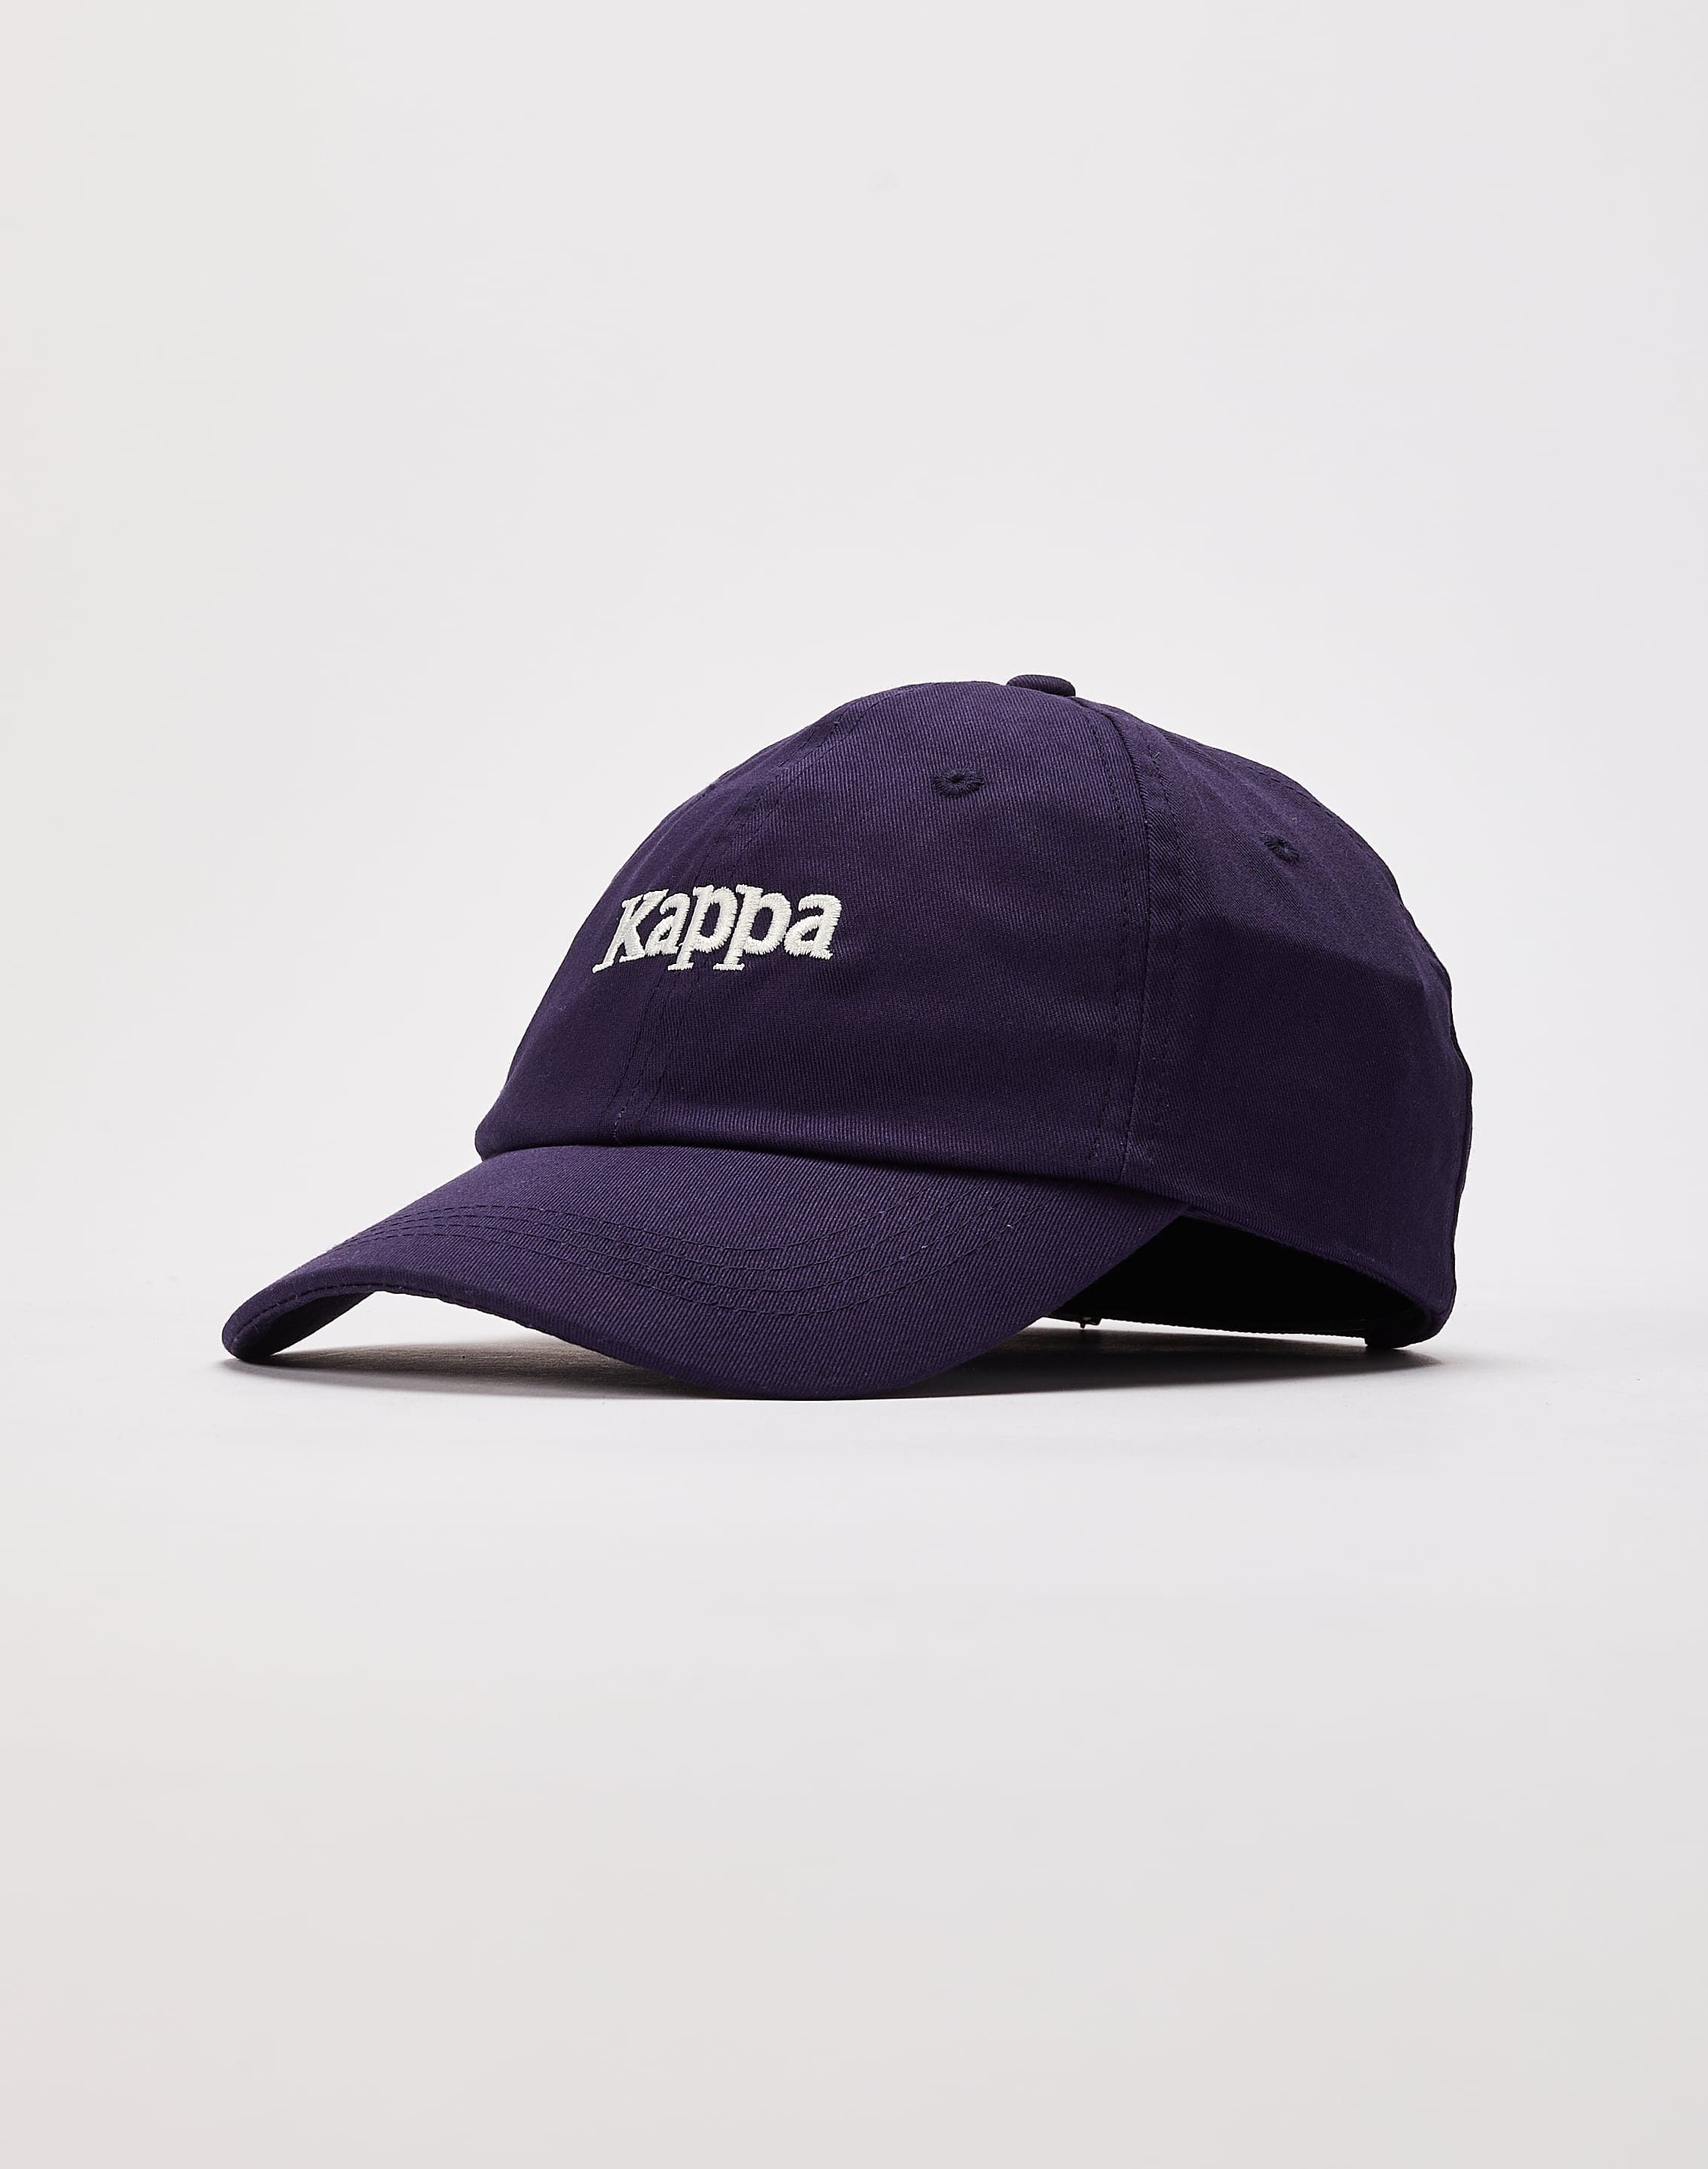 Kappa Authentic Hoogeveen Dad Hat – DTLR